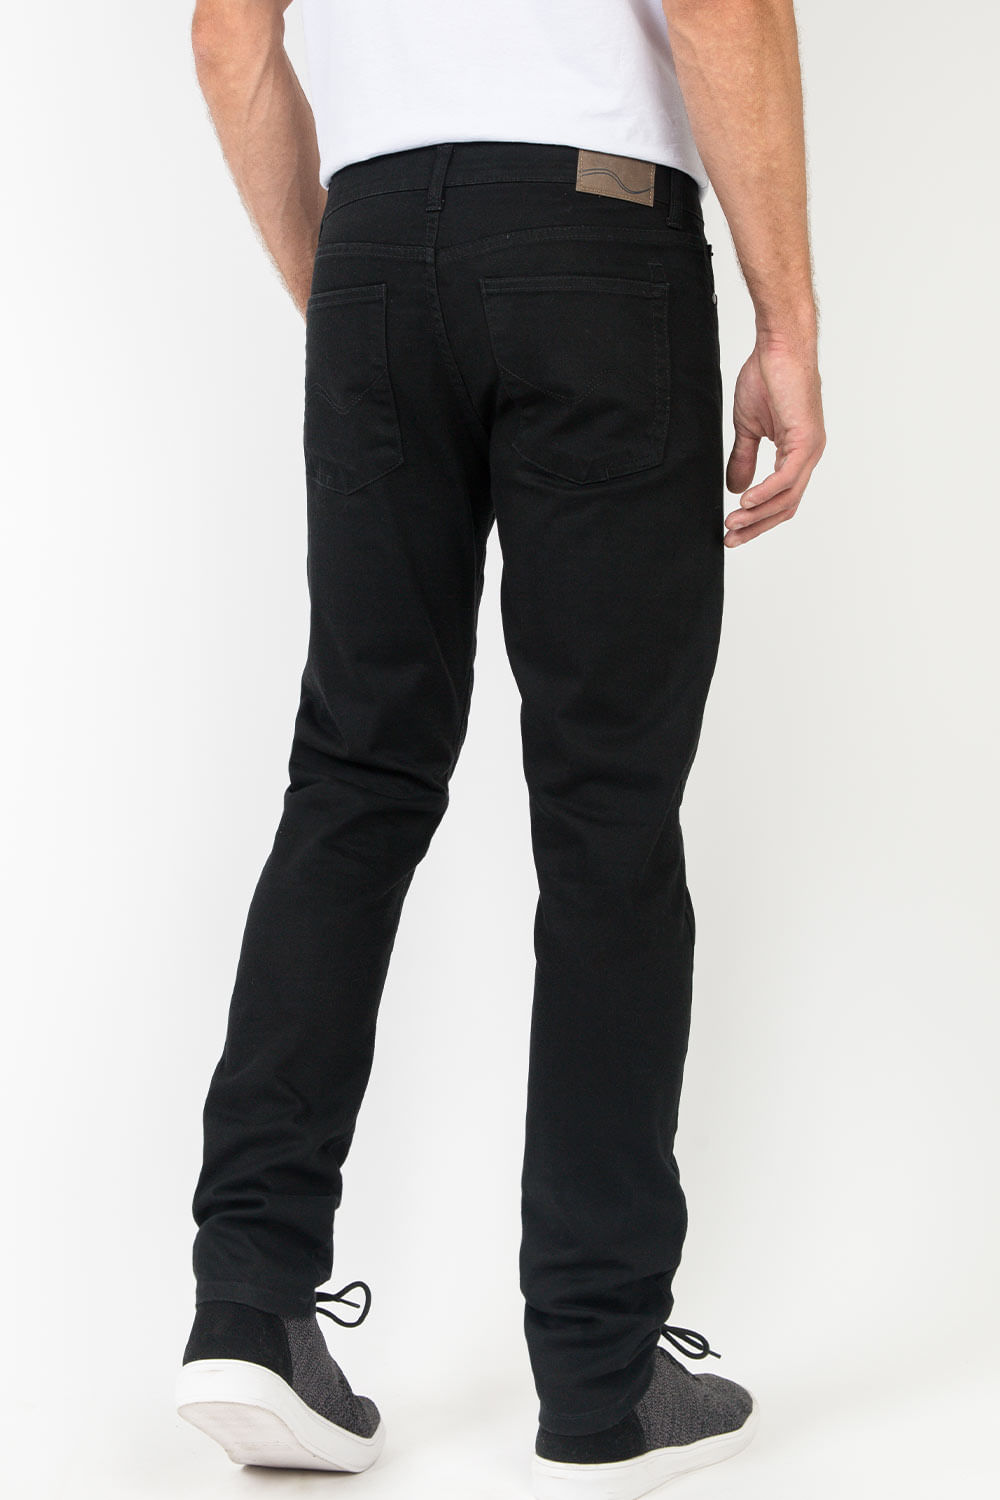 Calça Jeans Masculina Super Skinny Preto All Black Tendência Street Casual  Premium Top Deluxe